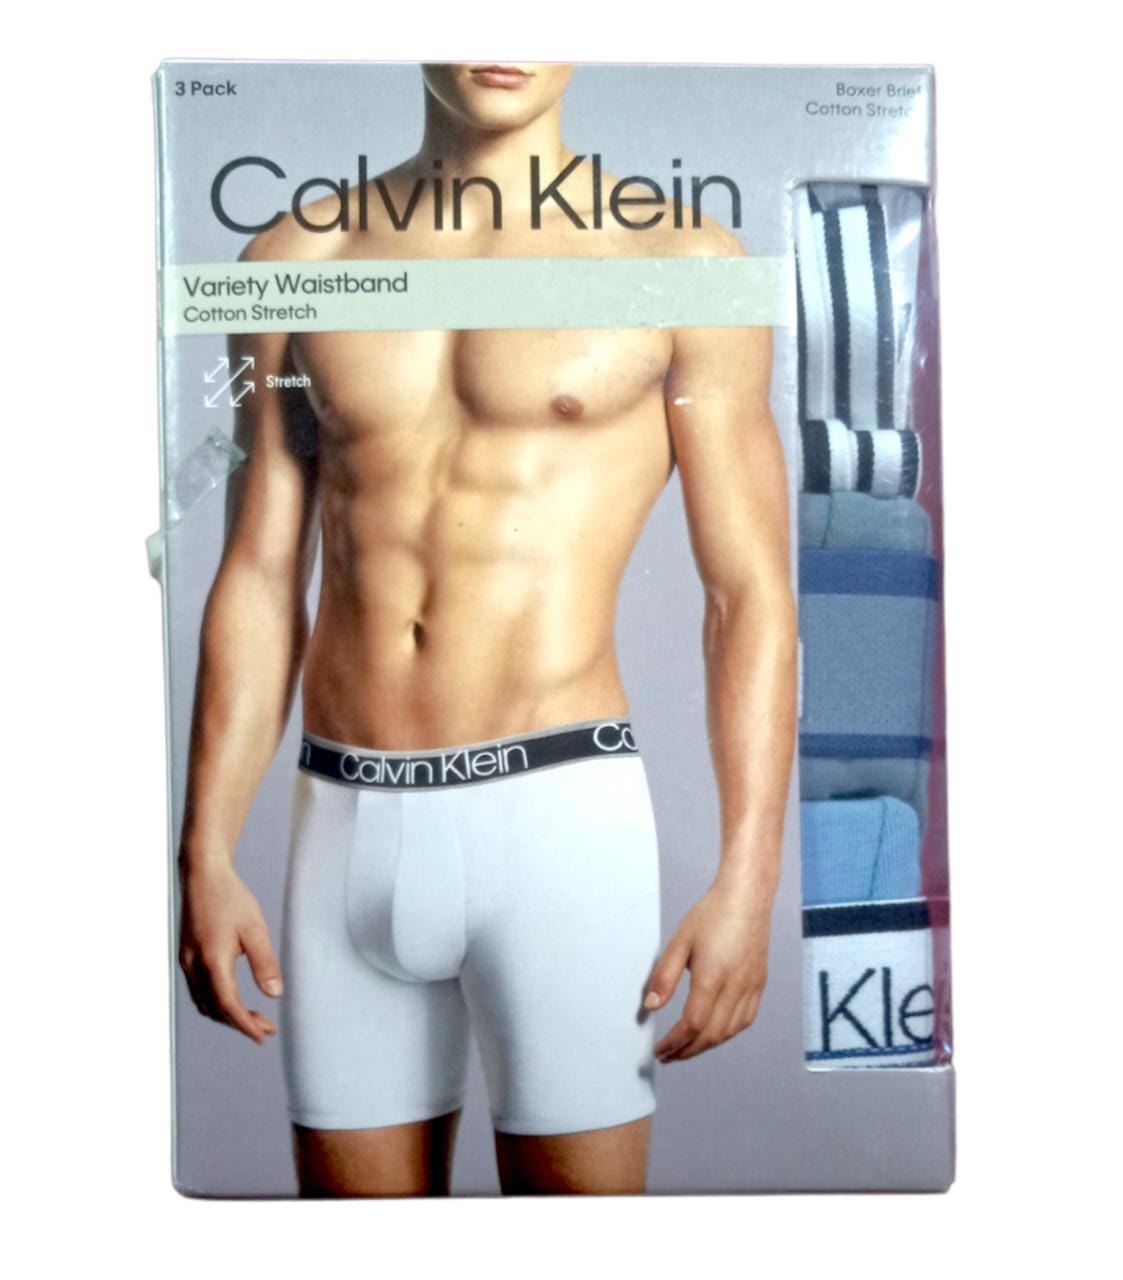 CALVIN KLEIN Ropa interior de algodón para mujer - Pack 3 CALVIN